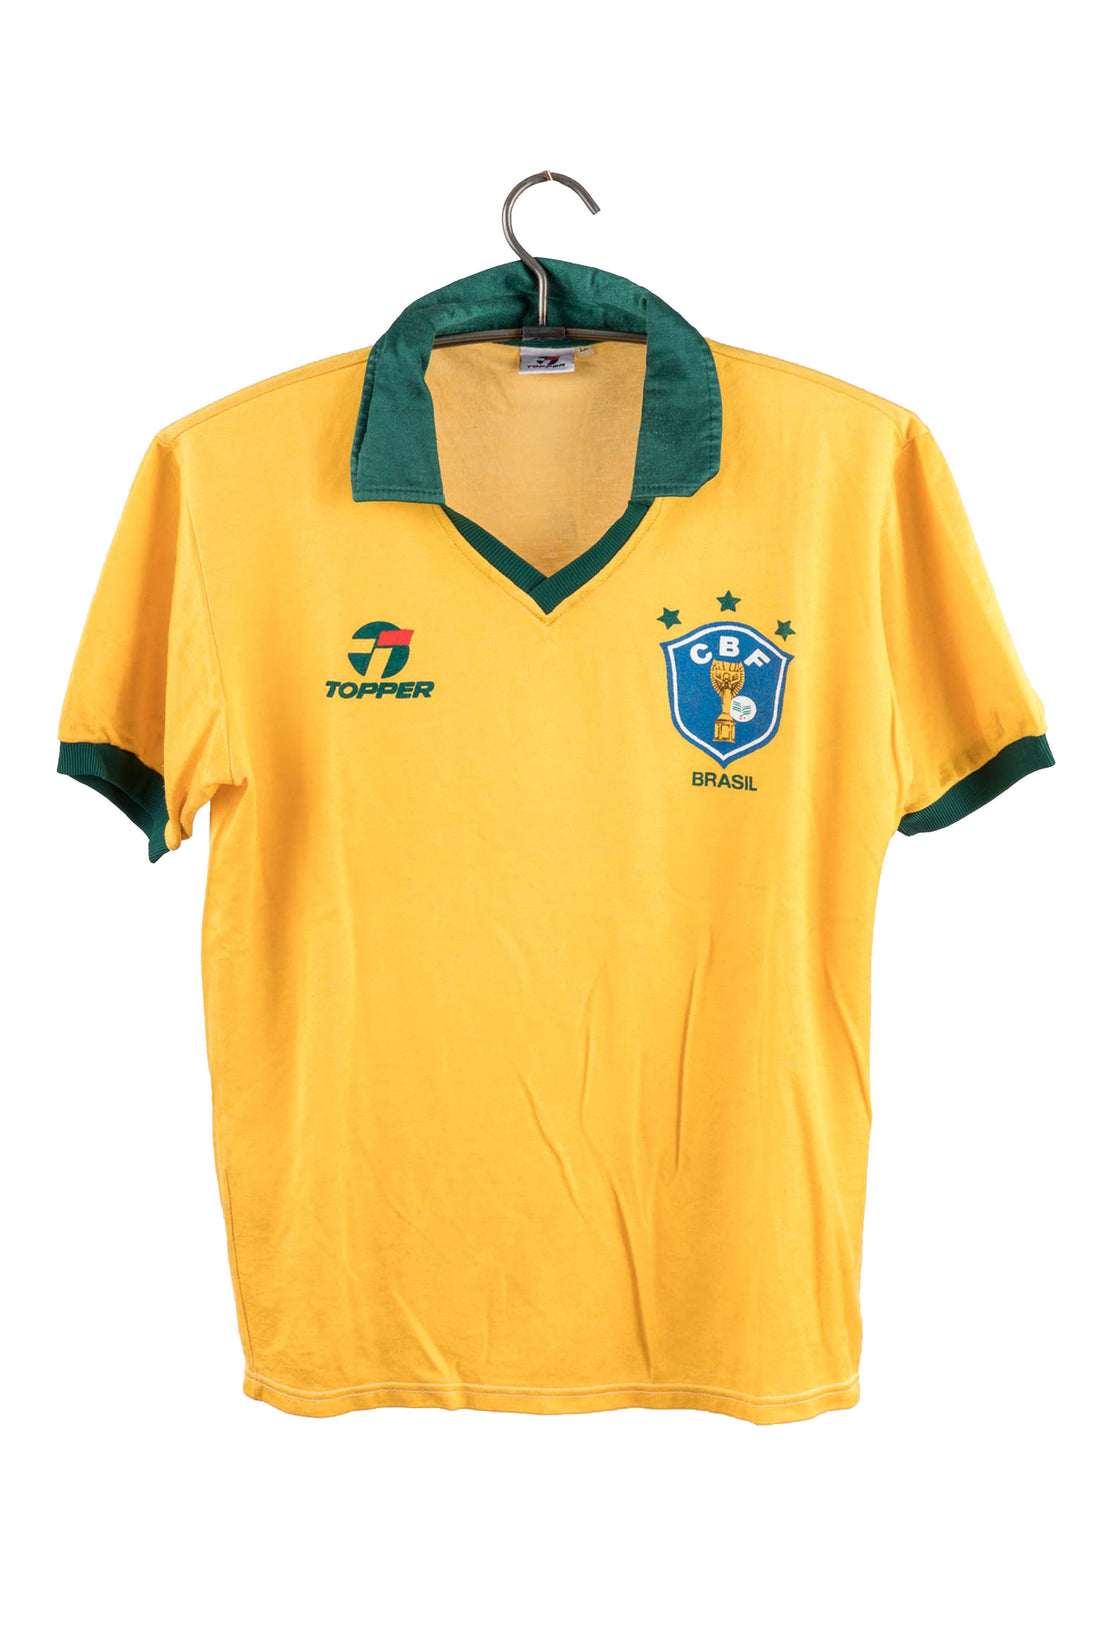 Brazil 1985 - 1988 Home Football Shirt